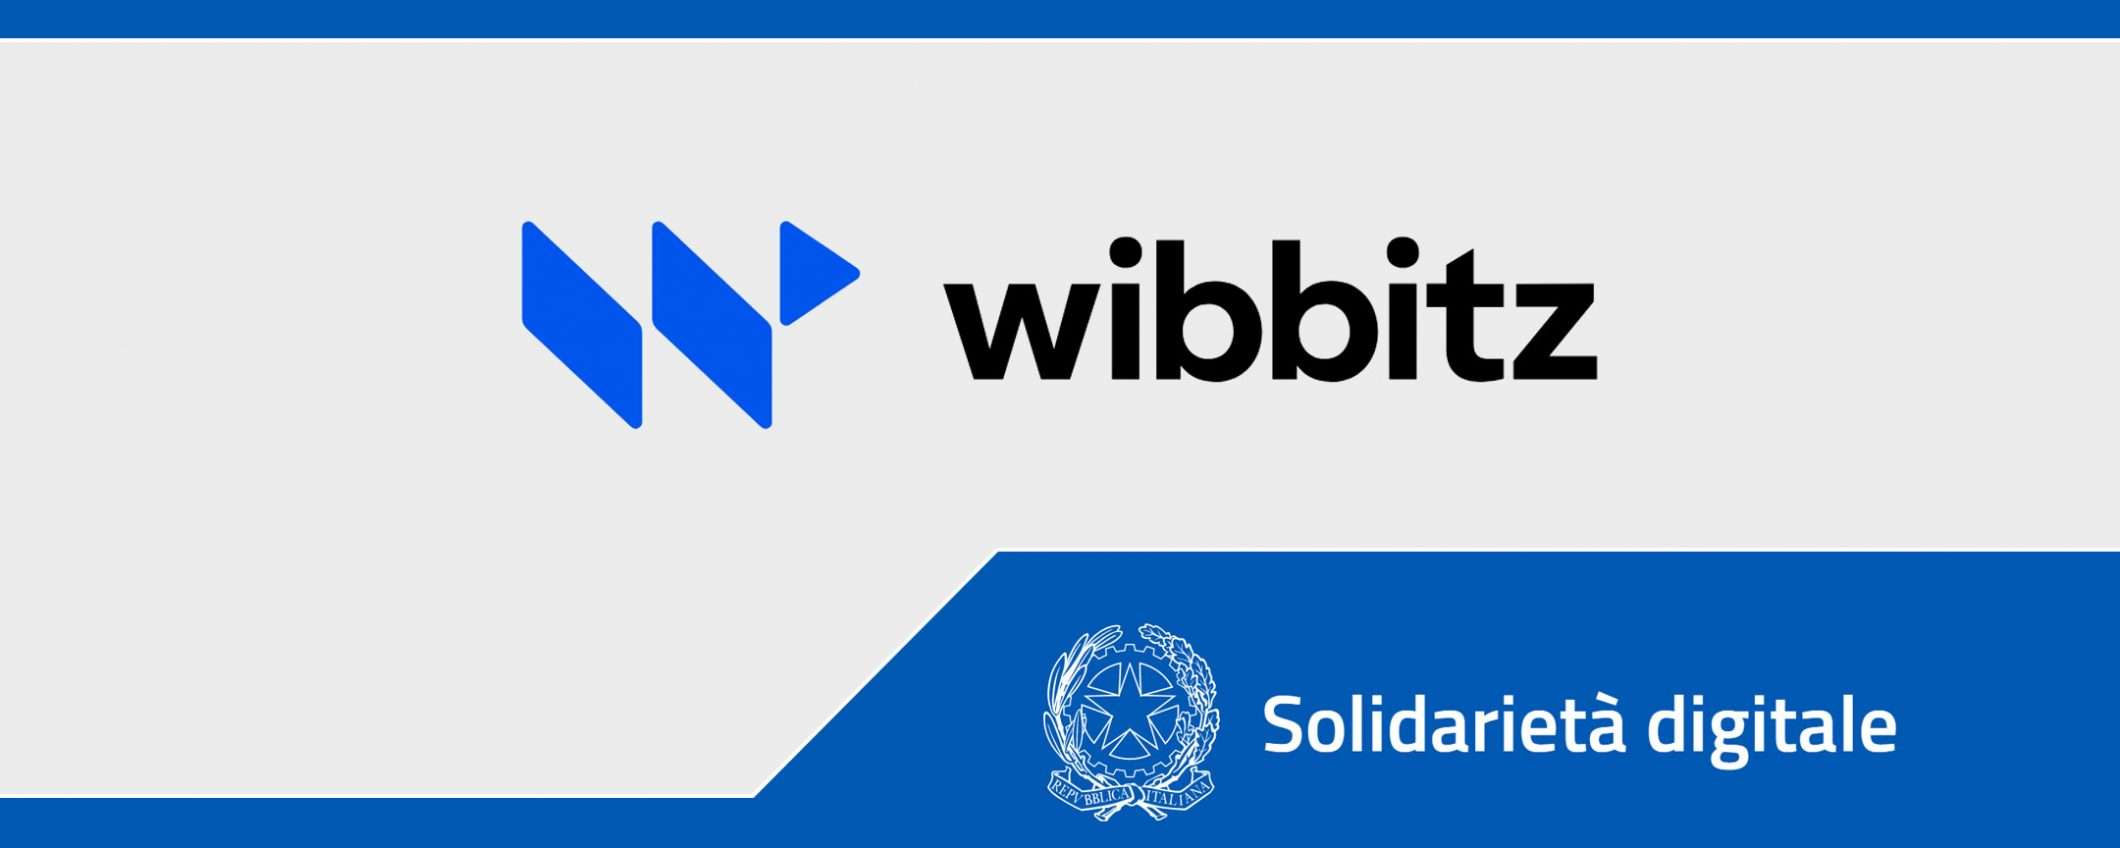 Solidarietà Digitale: Wibbitz, short form video